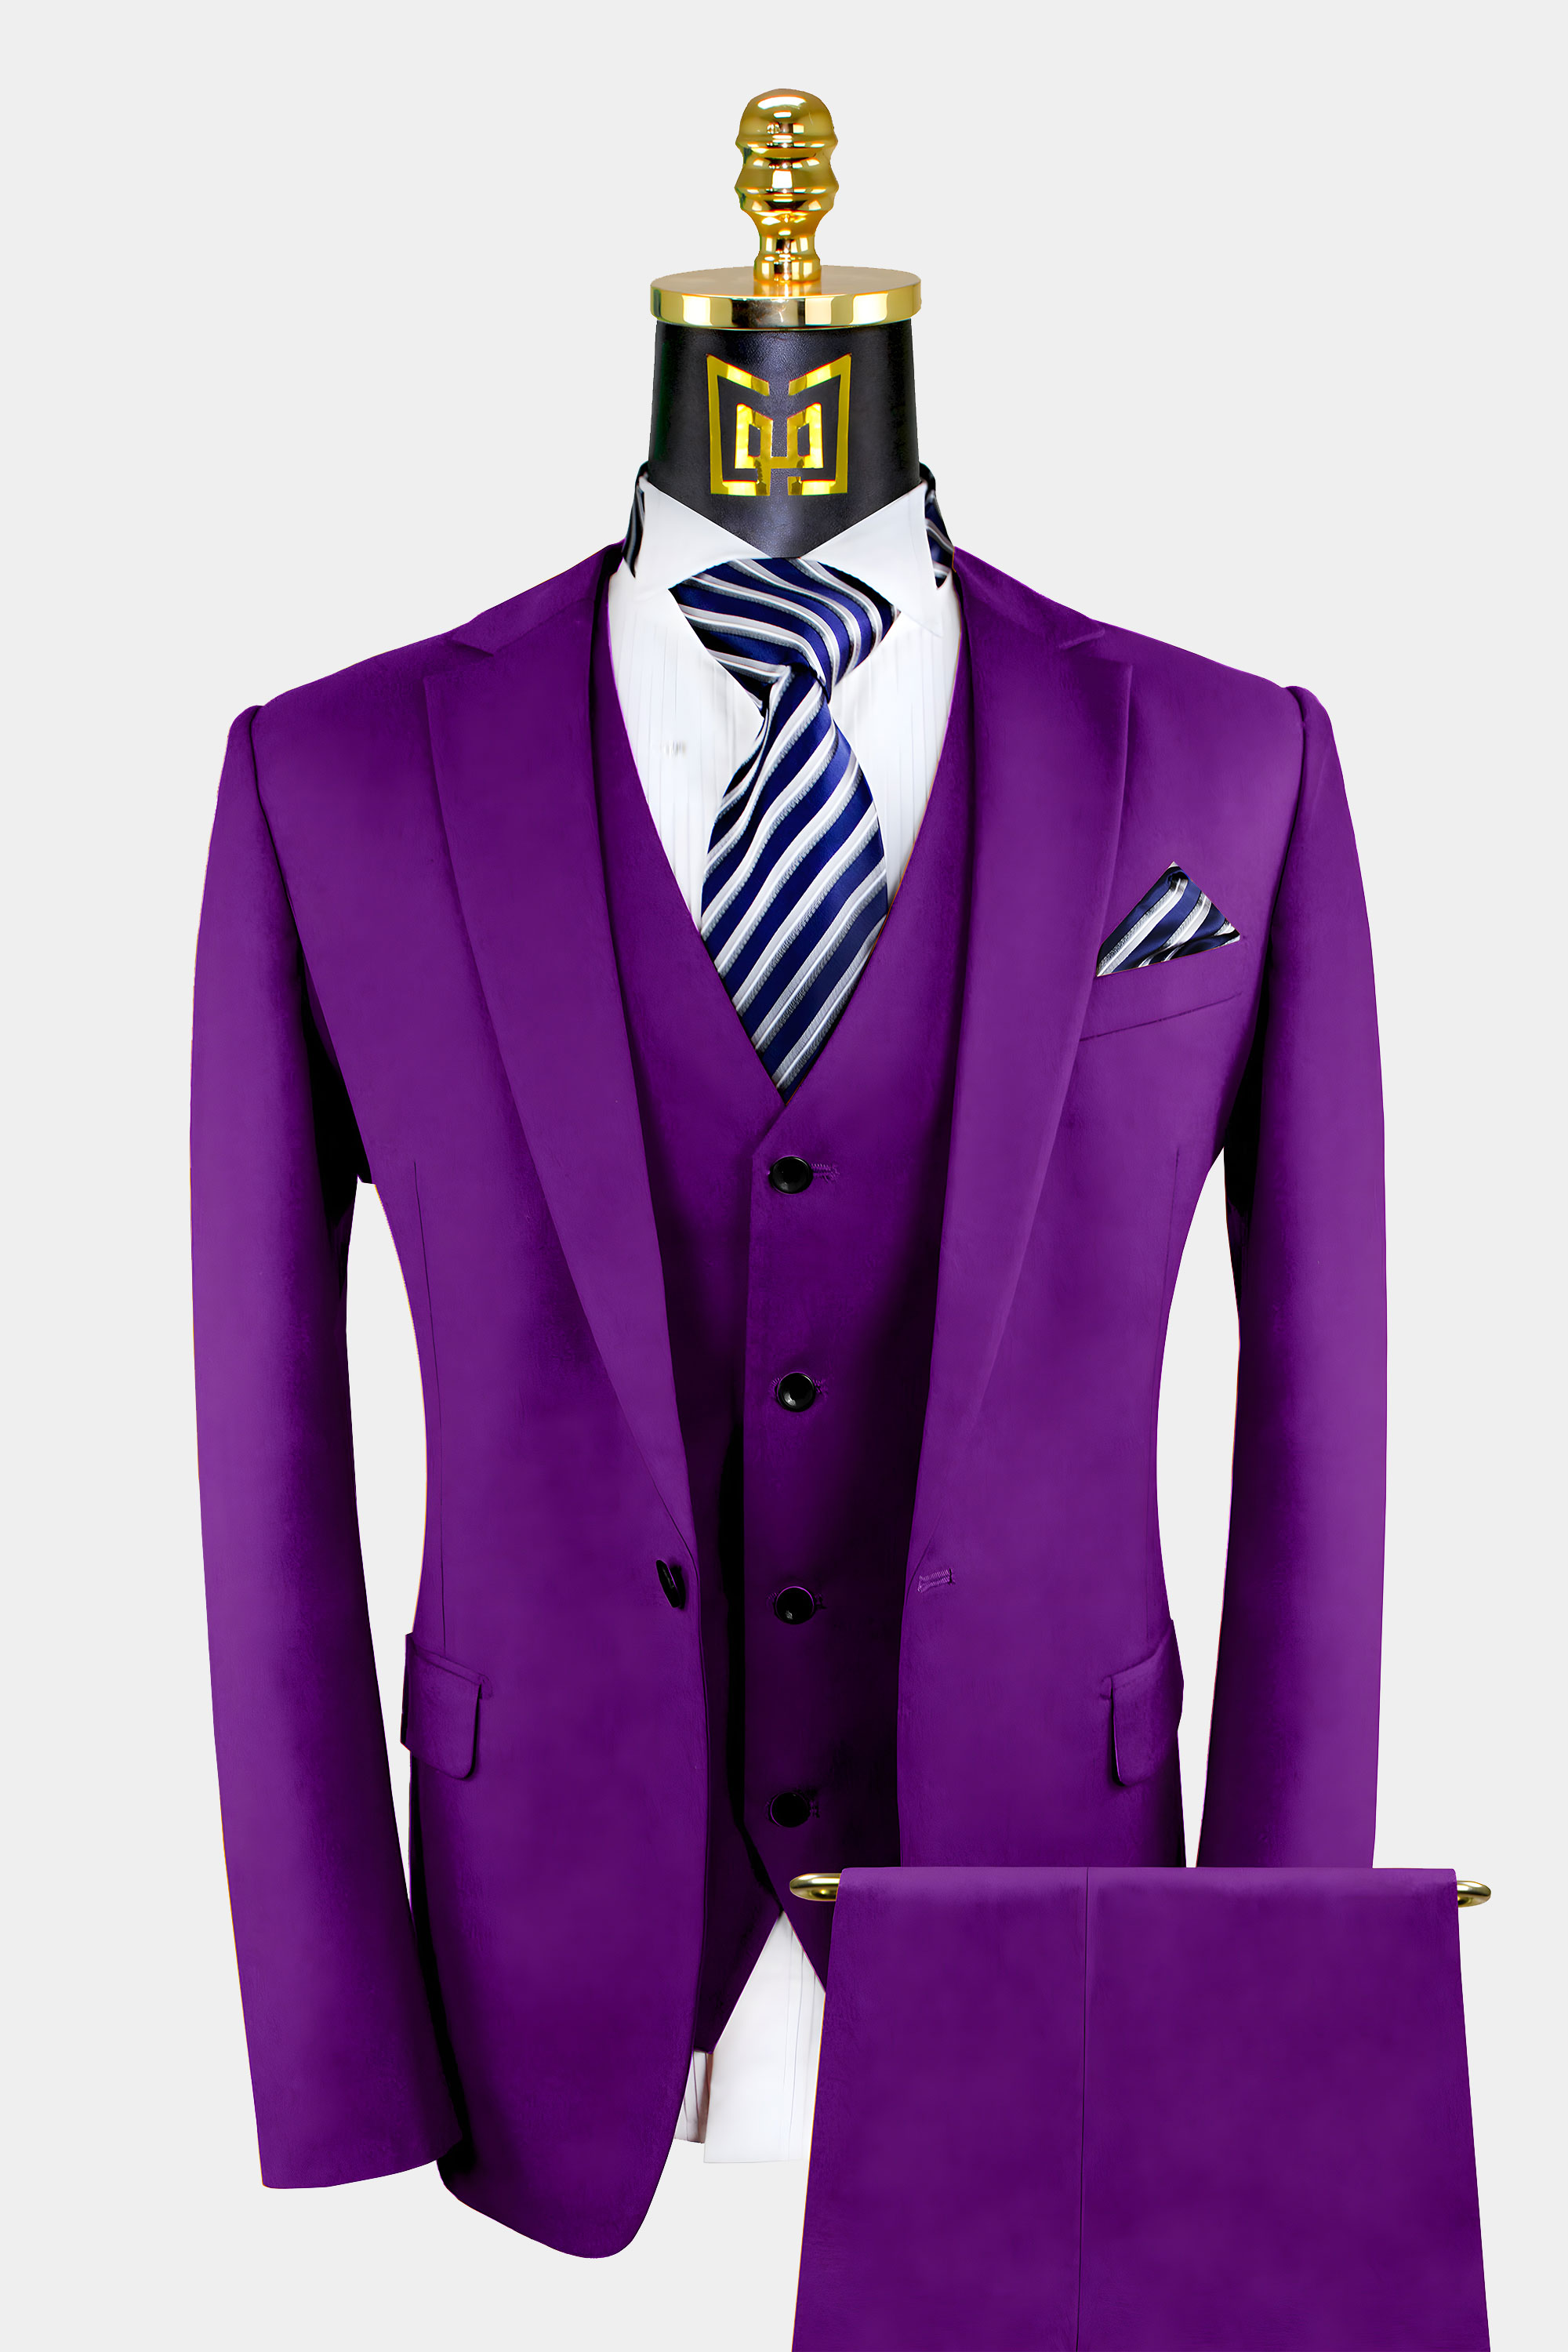 3-Piece-Purple-Suit-For-Mens-Wedding-Groom-Prom-Tuxedo-from-Gentlemansguru.com